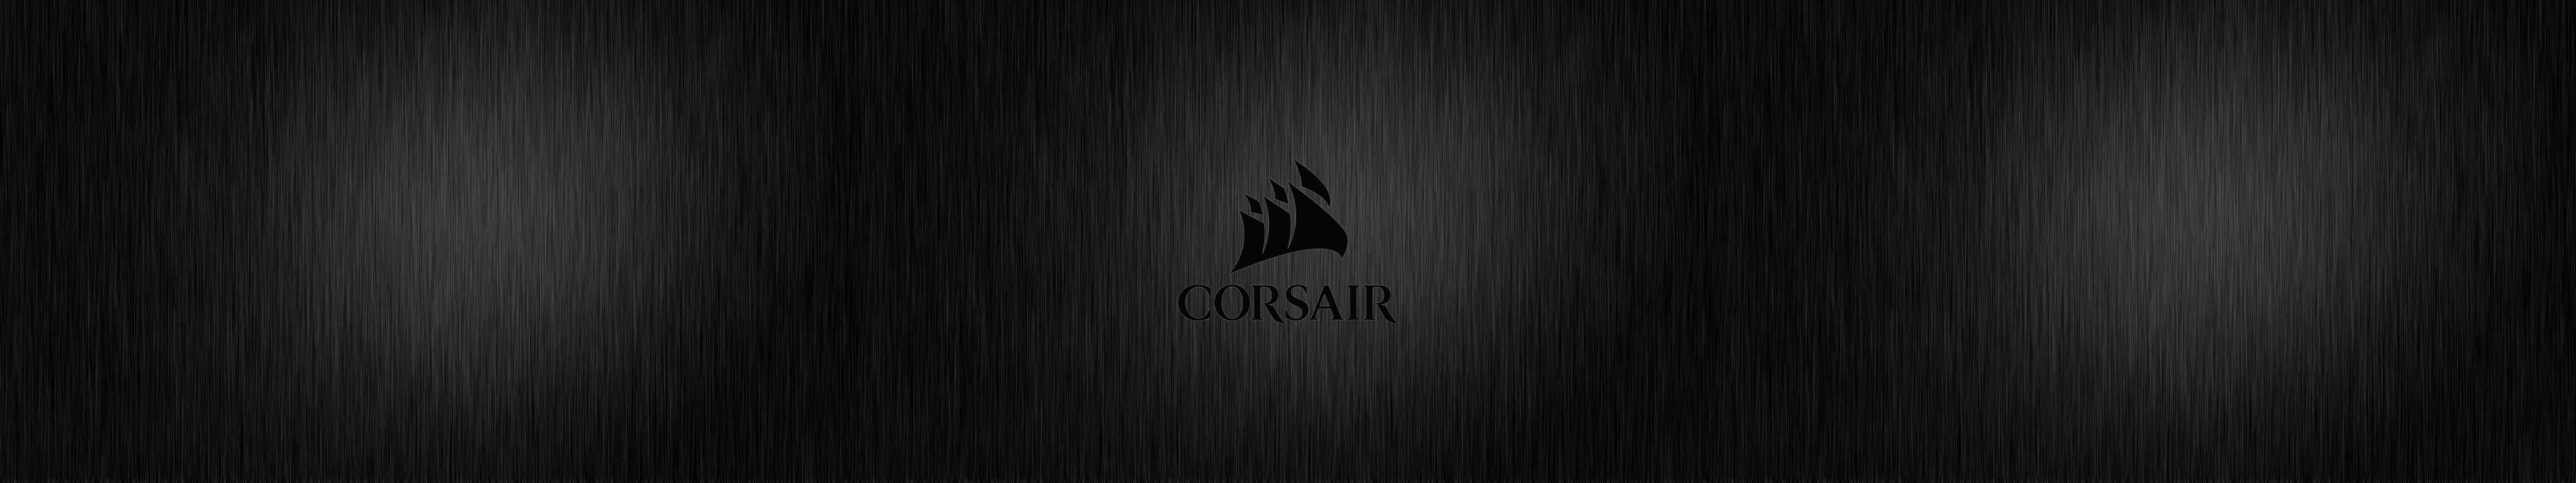 Hochleistungsgaming Mit Corsair